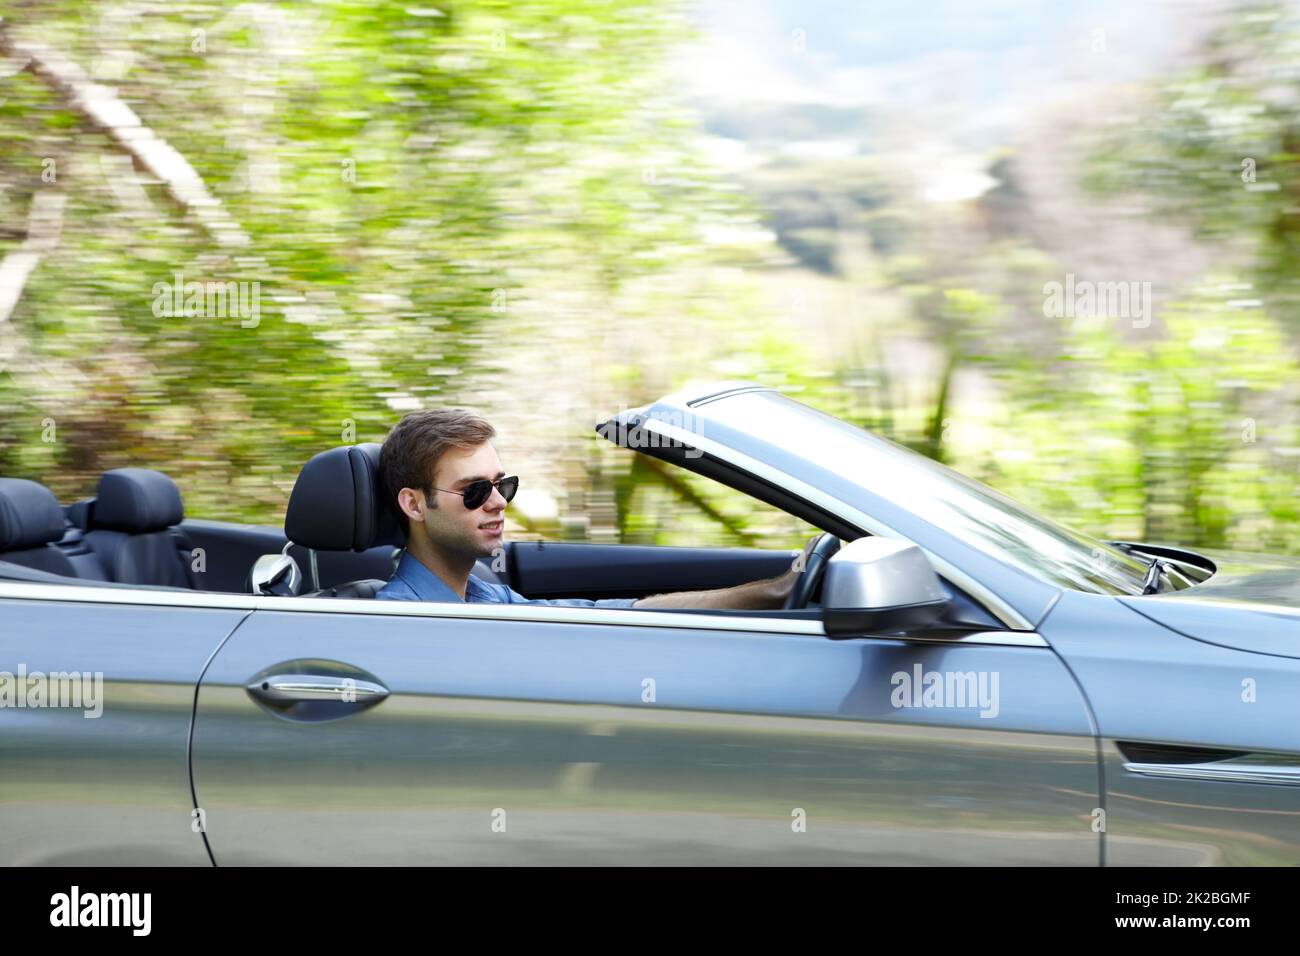 Er liebt sein Cabrio. Ein junger Mann, der ein silbernes konvertierbares Fahrzeug fährt. Stockfoto